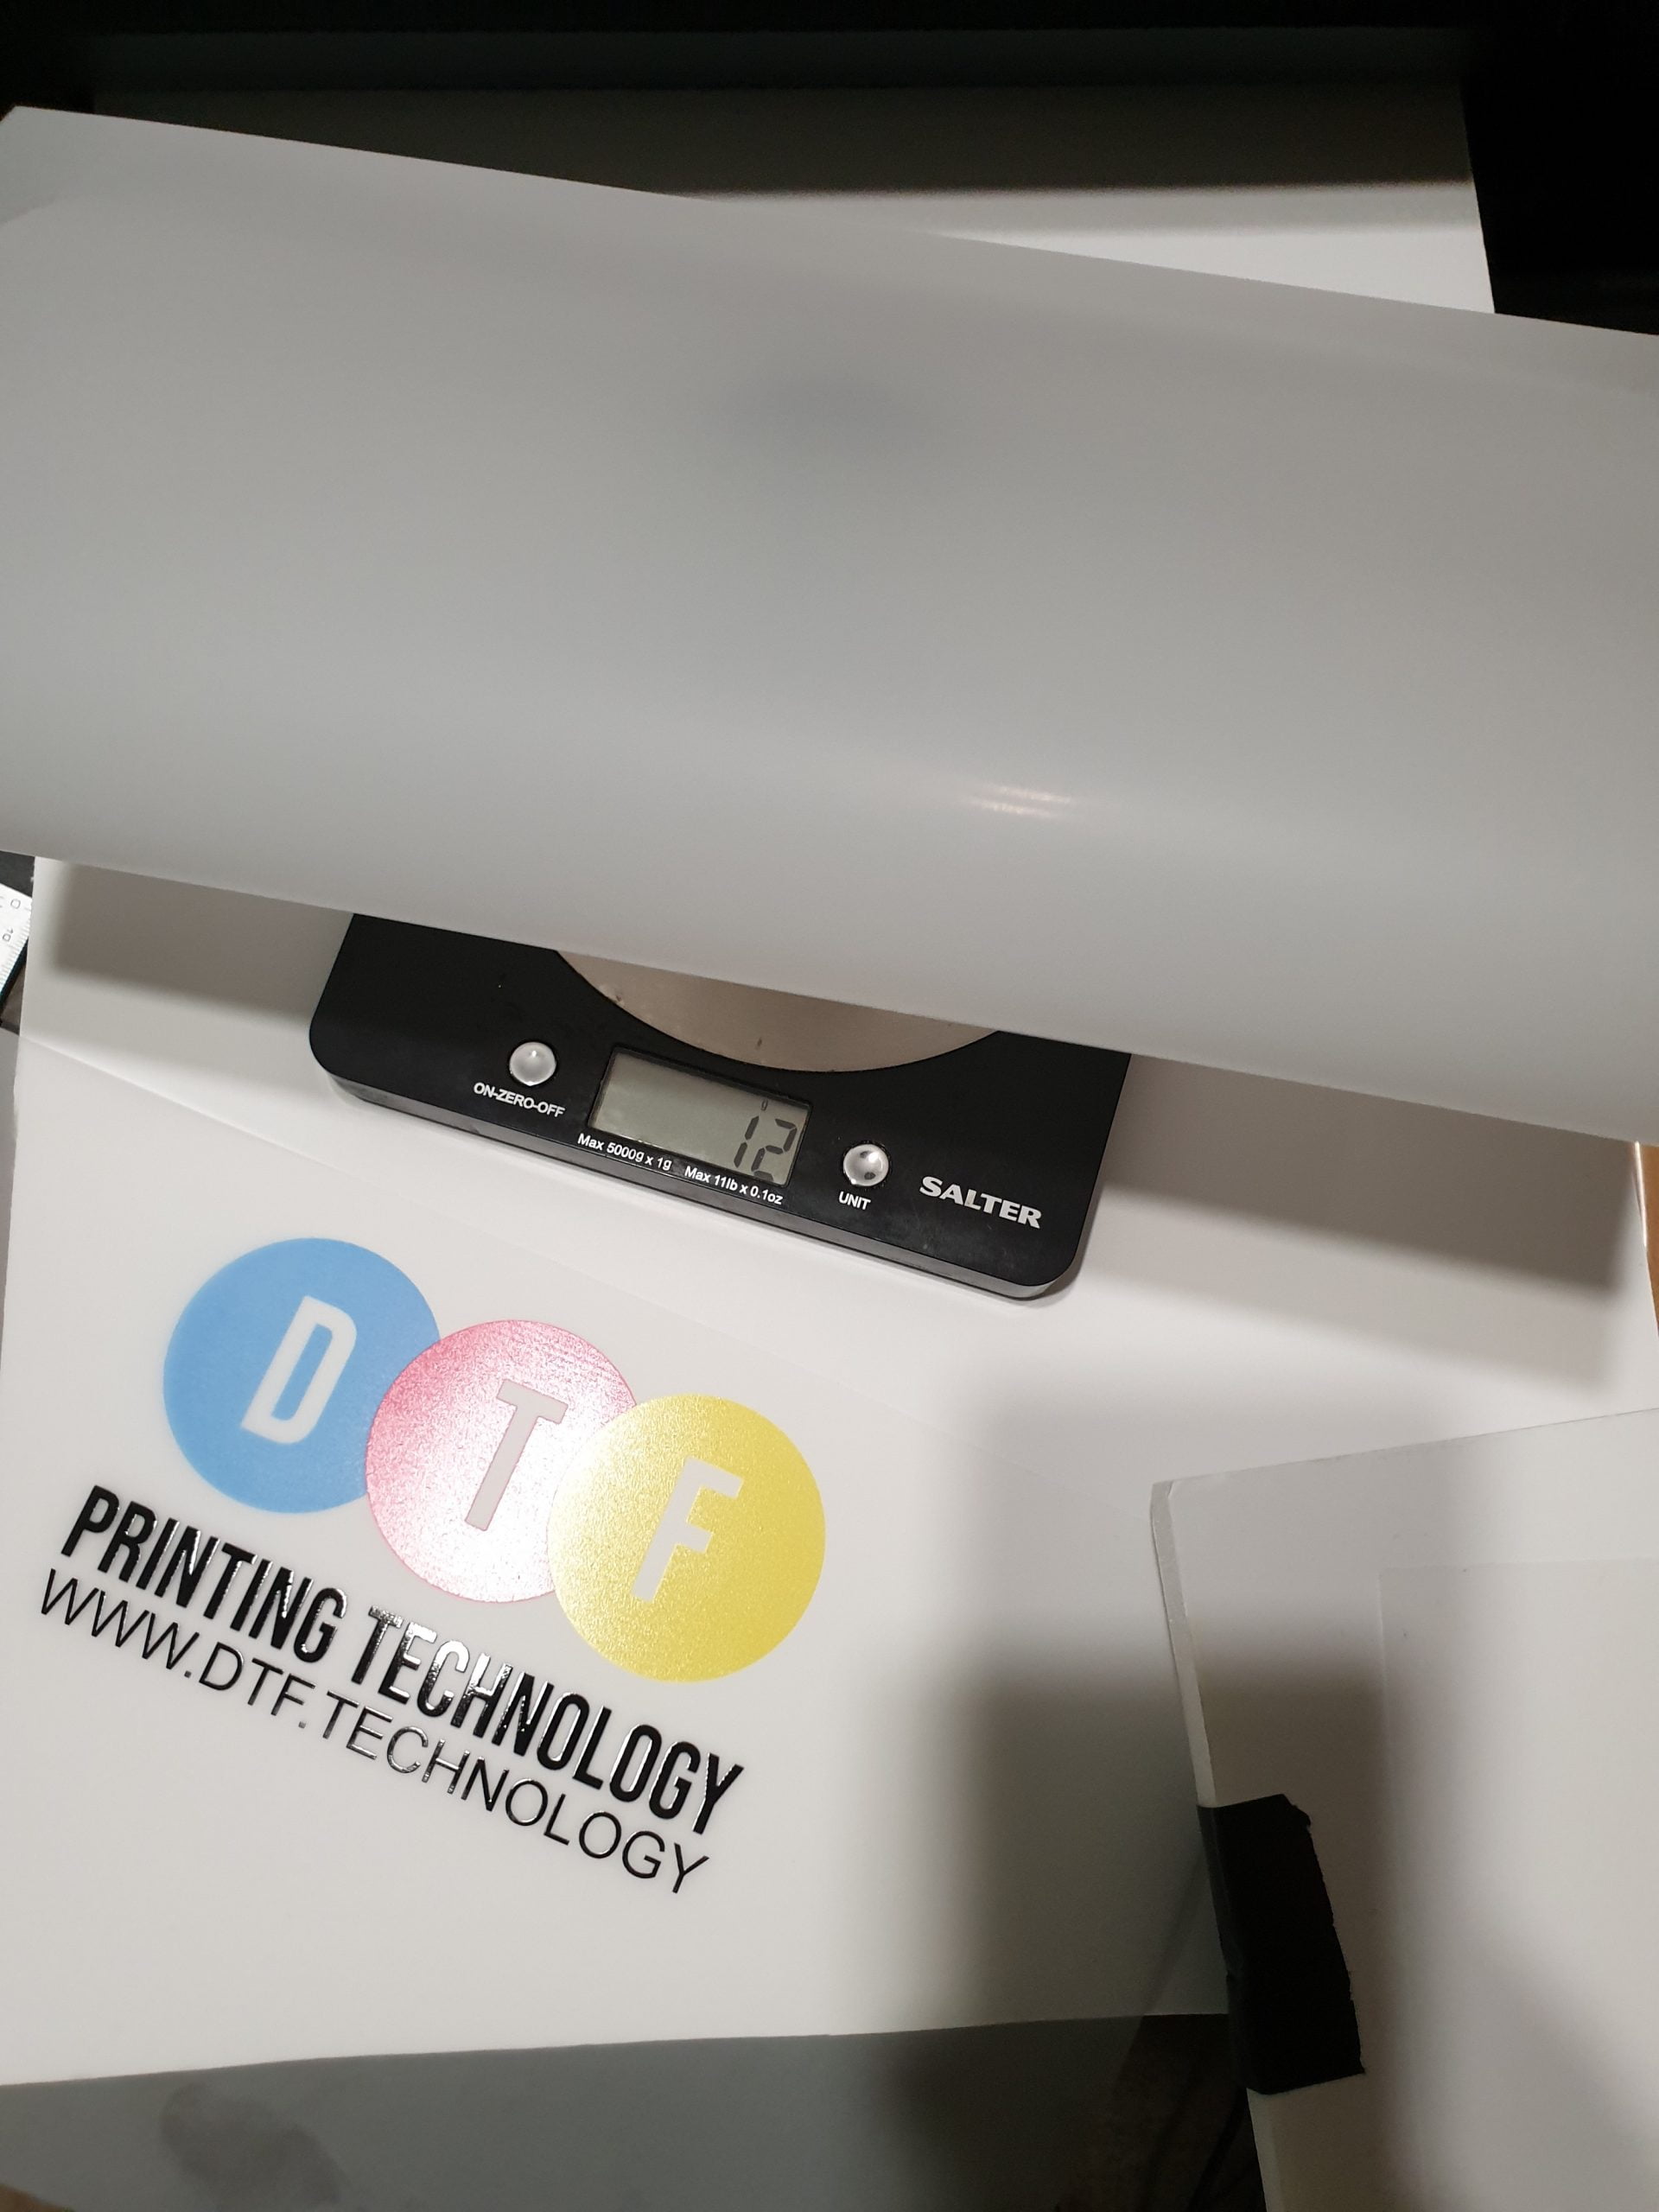 dtf printing powder ink usage